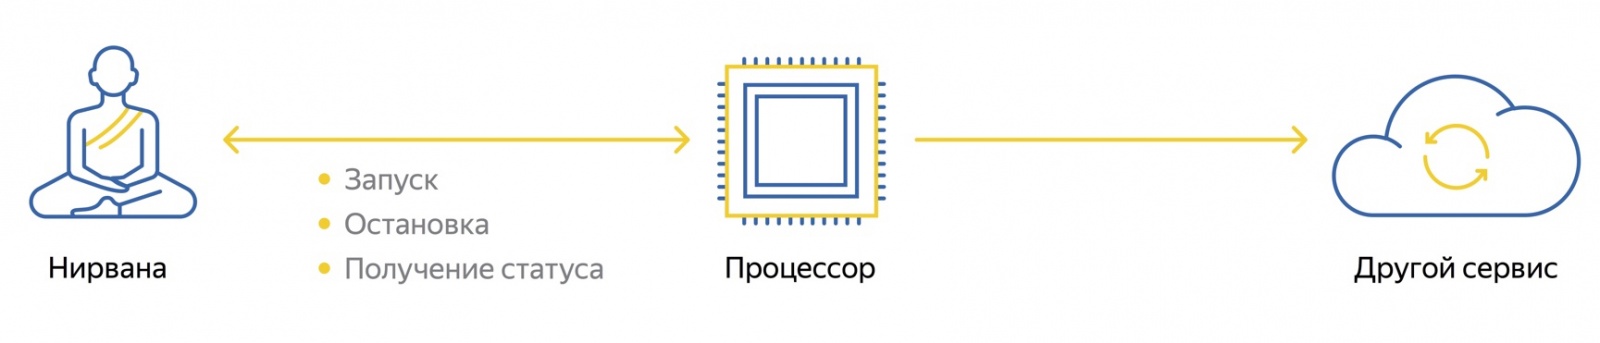 Познаём Нирвану – универсальную вычислительную платформу Яндекса - 3